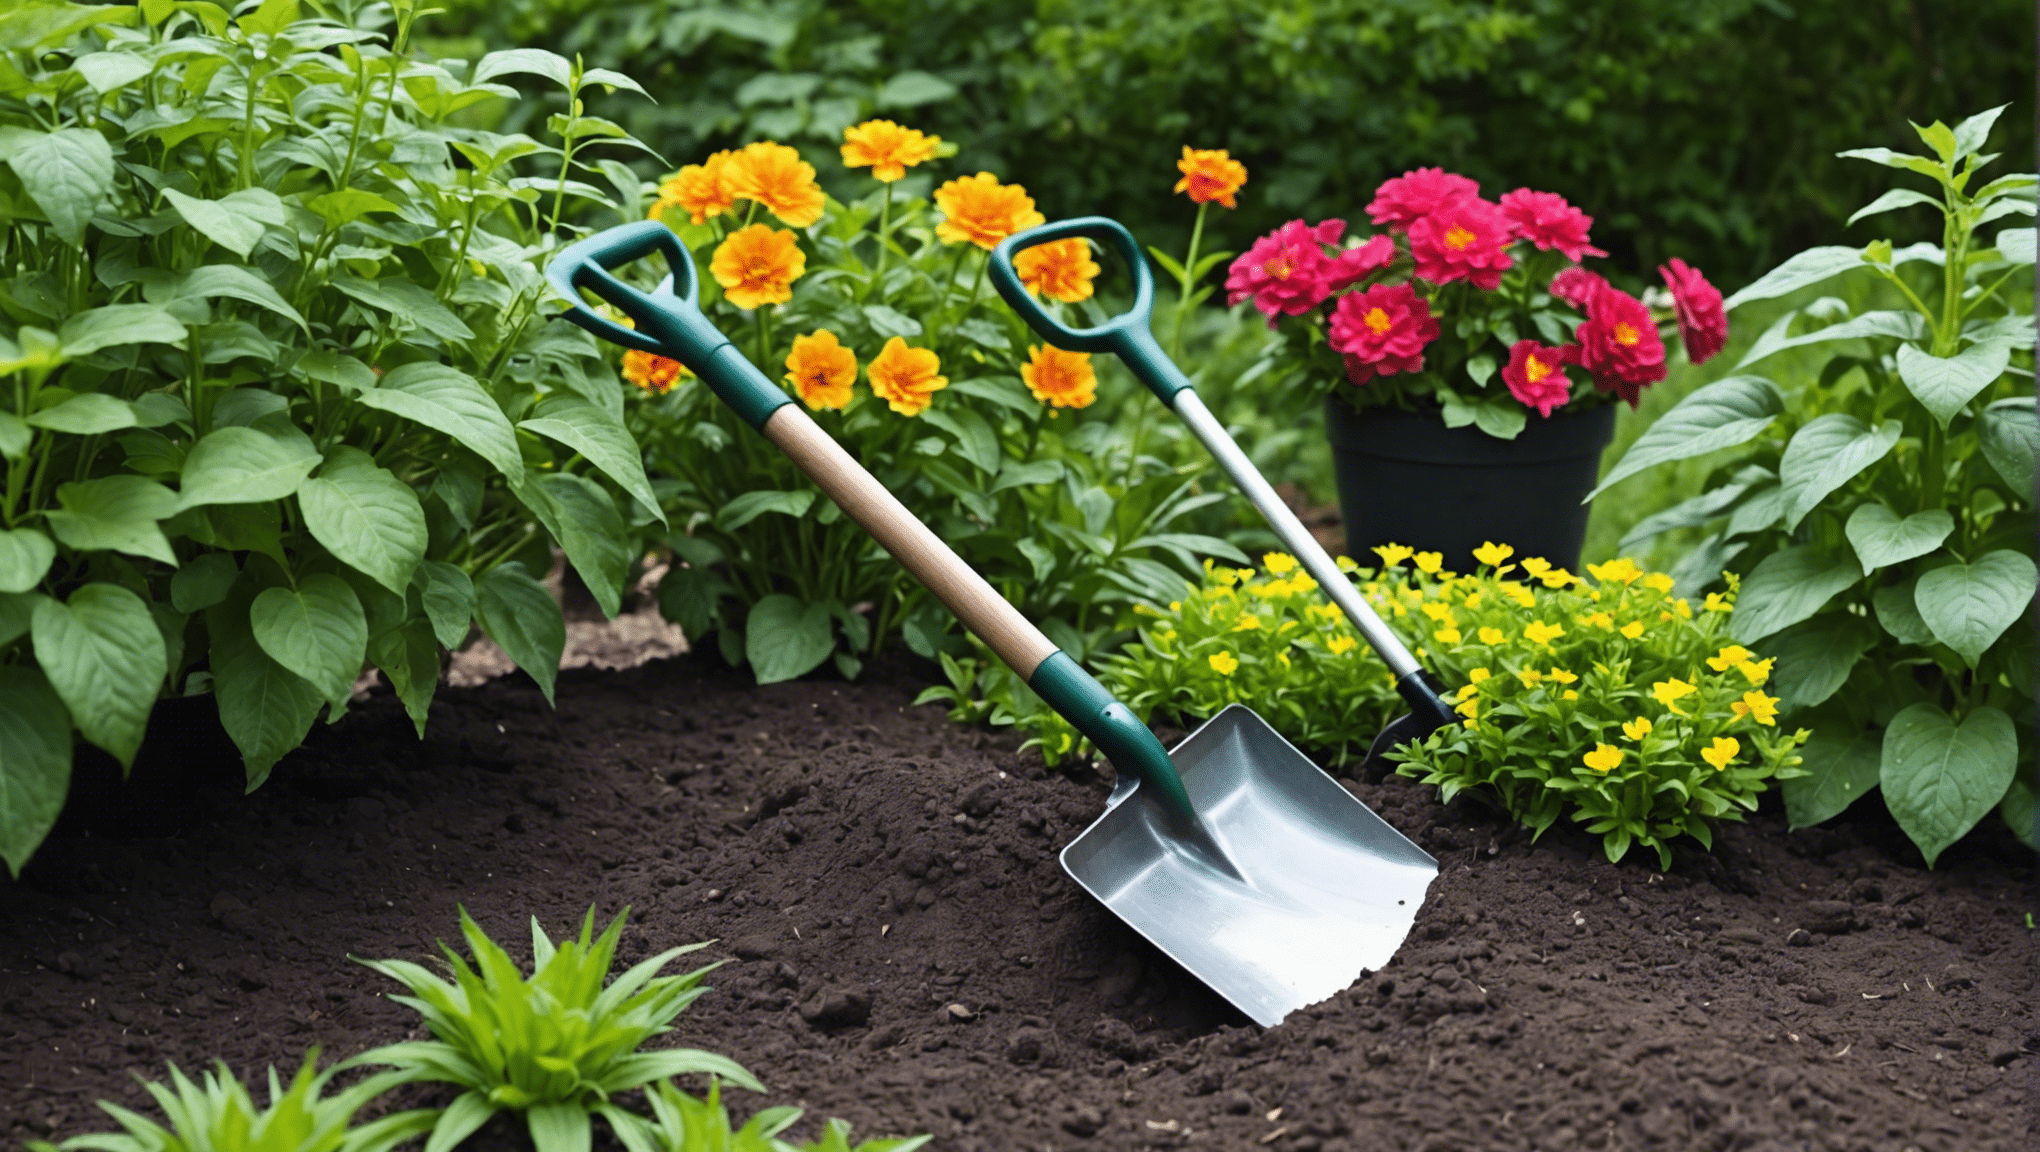 encontre a pequena pá de jardim ideal para todas as suas necessidades de jardinagem com nossa seleção de ferramentas duráveis e de alta qualidade.